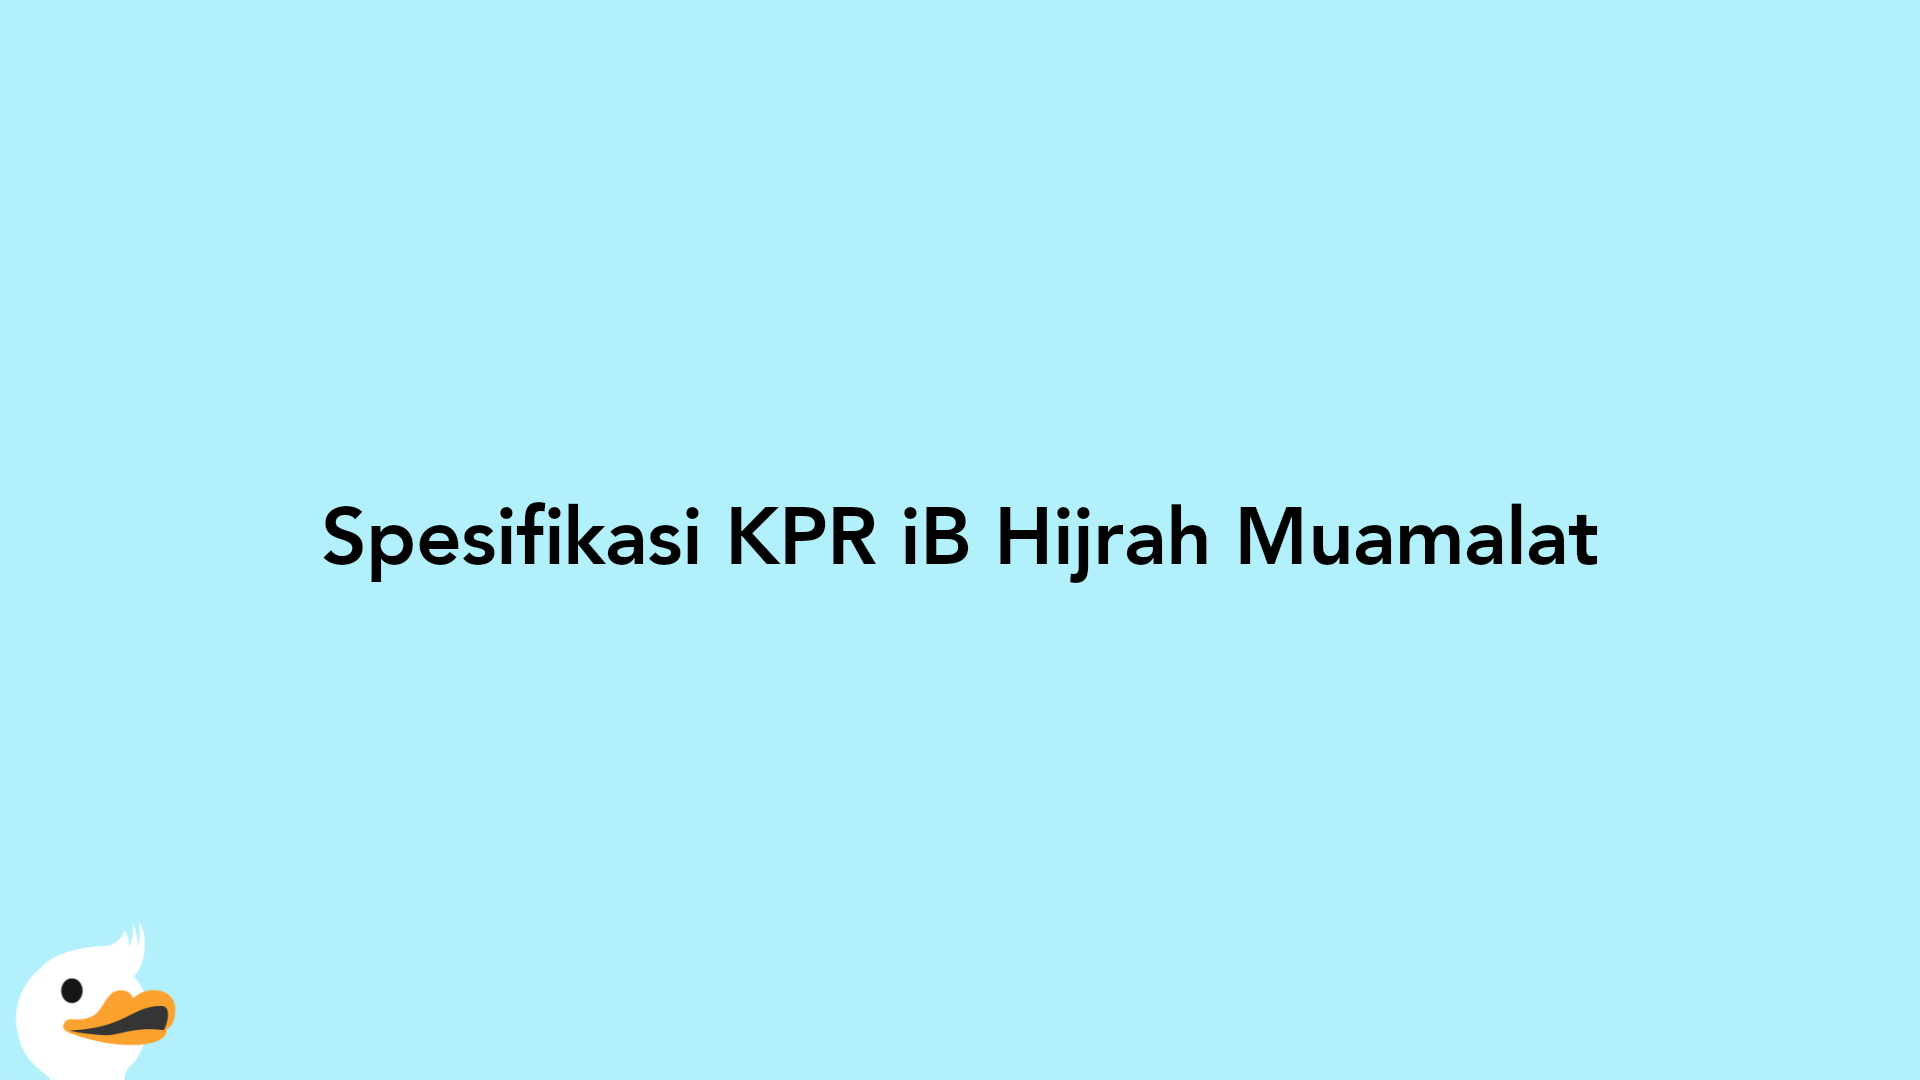 Spesifikasi KPR iB Hijrah Muamalat